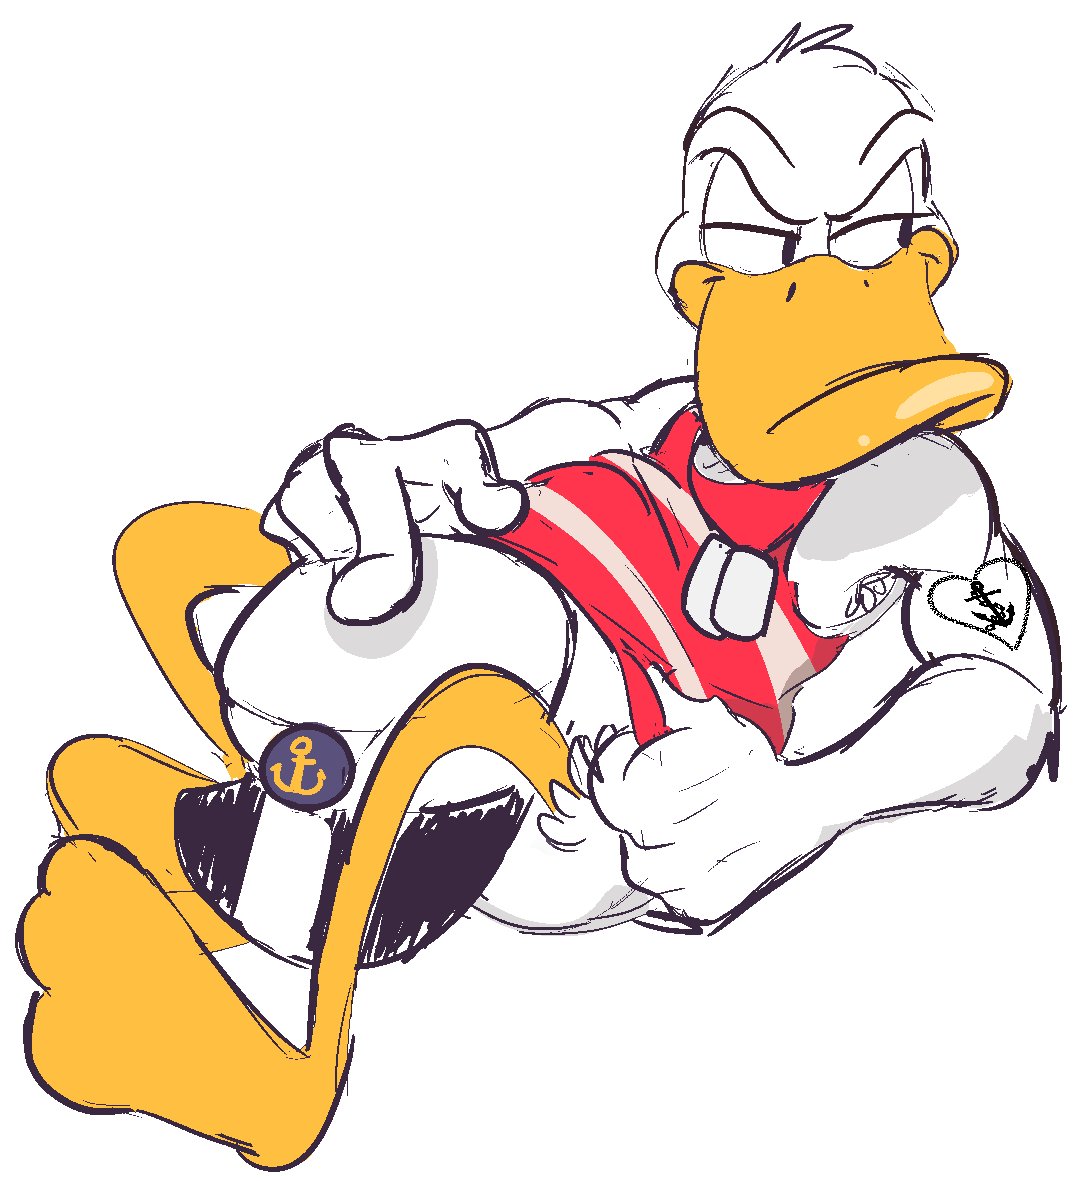 Donald duck spike donald's's big butt.